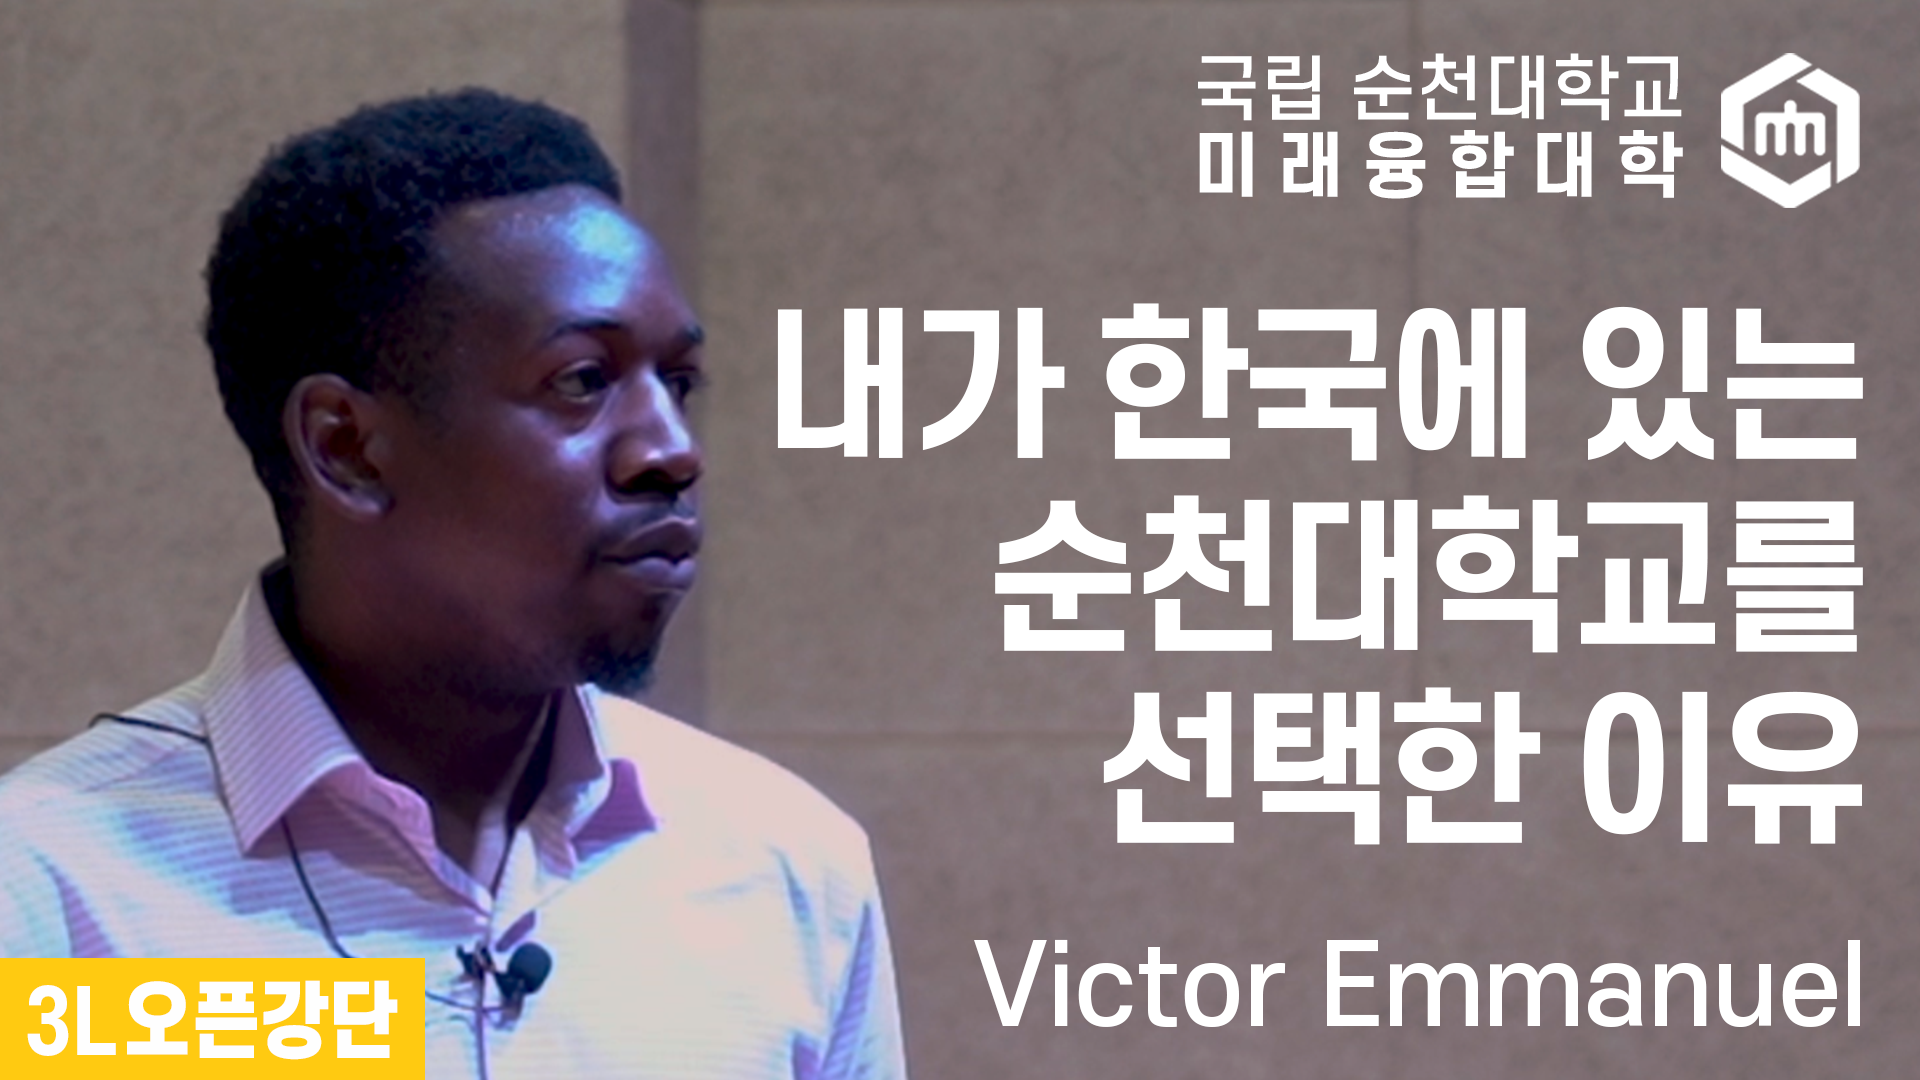 내가 한국에 있는 순천대학교를 선택한 이유(강연자: Victor Emmanuel) 상세정보 페이지로 이동하기